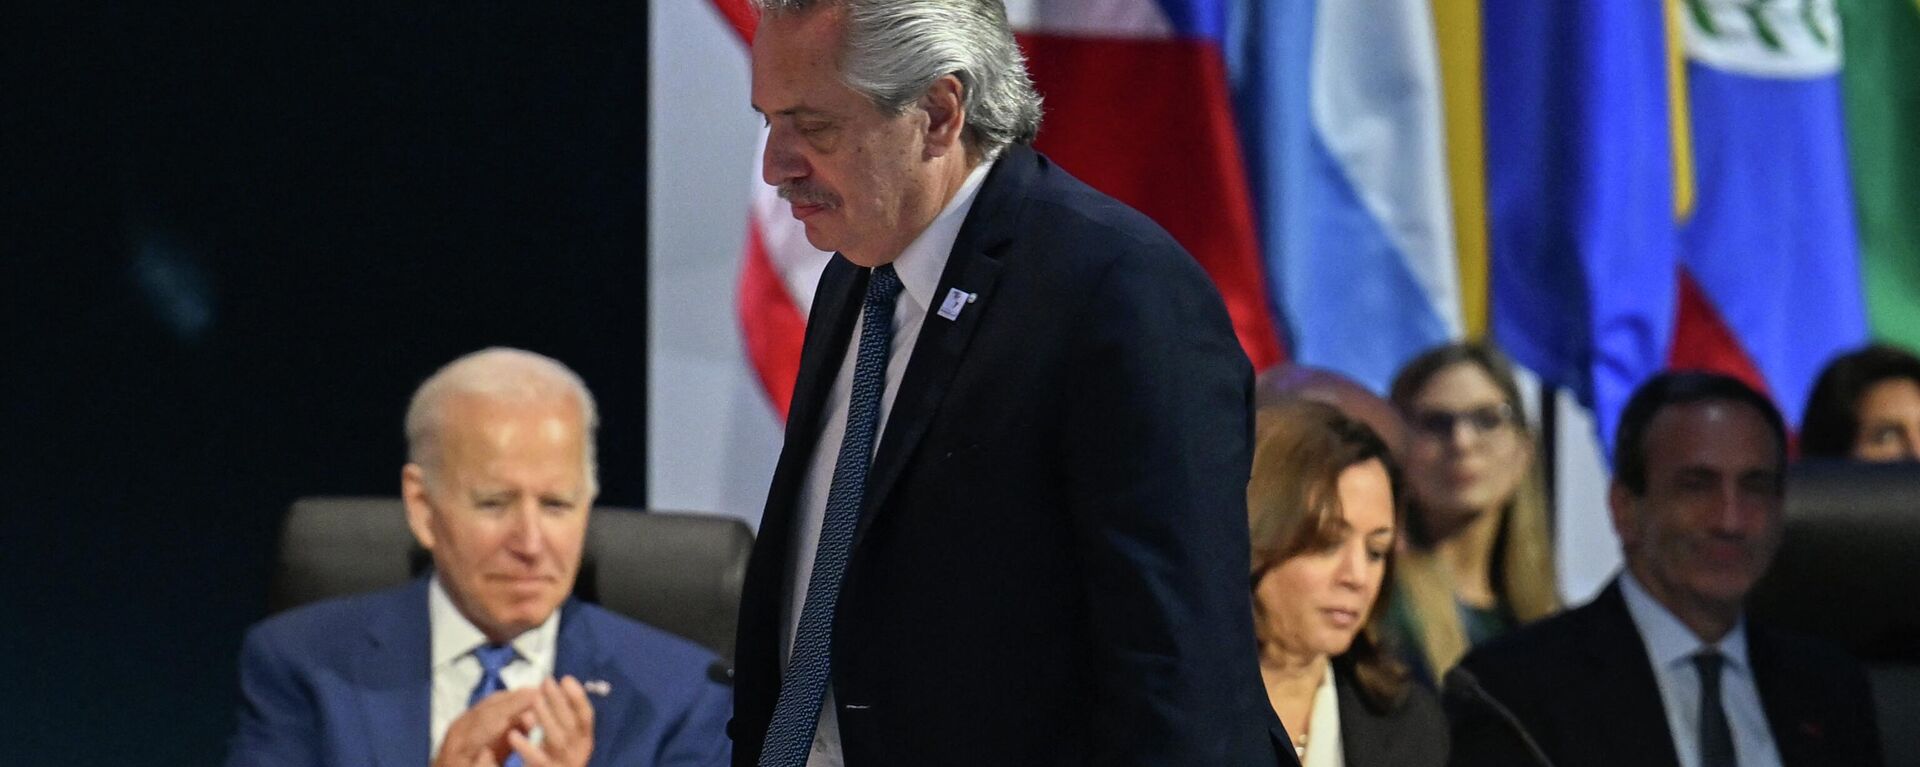 El presidente argentino Alberto Fernández pasa por delante de Joe Biden y Kamala Harris, presidente y vice de EEUU - Sputnik Mundo, 1920, 05.11.2022